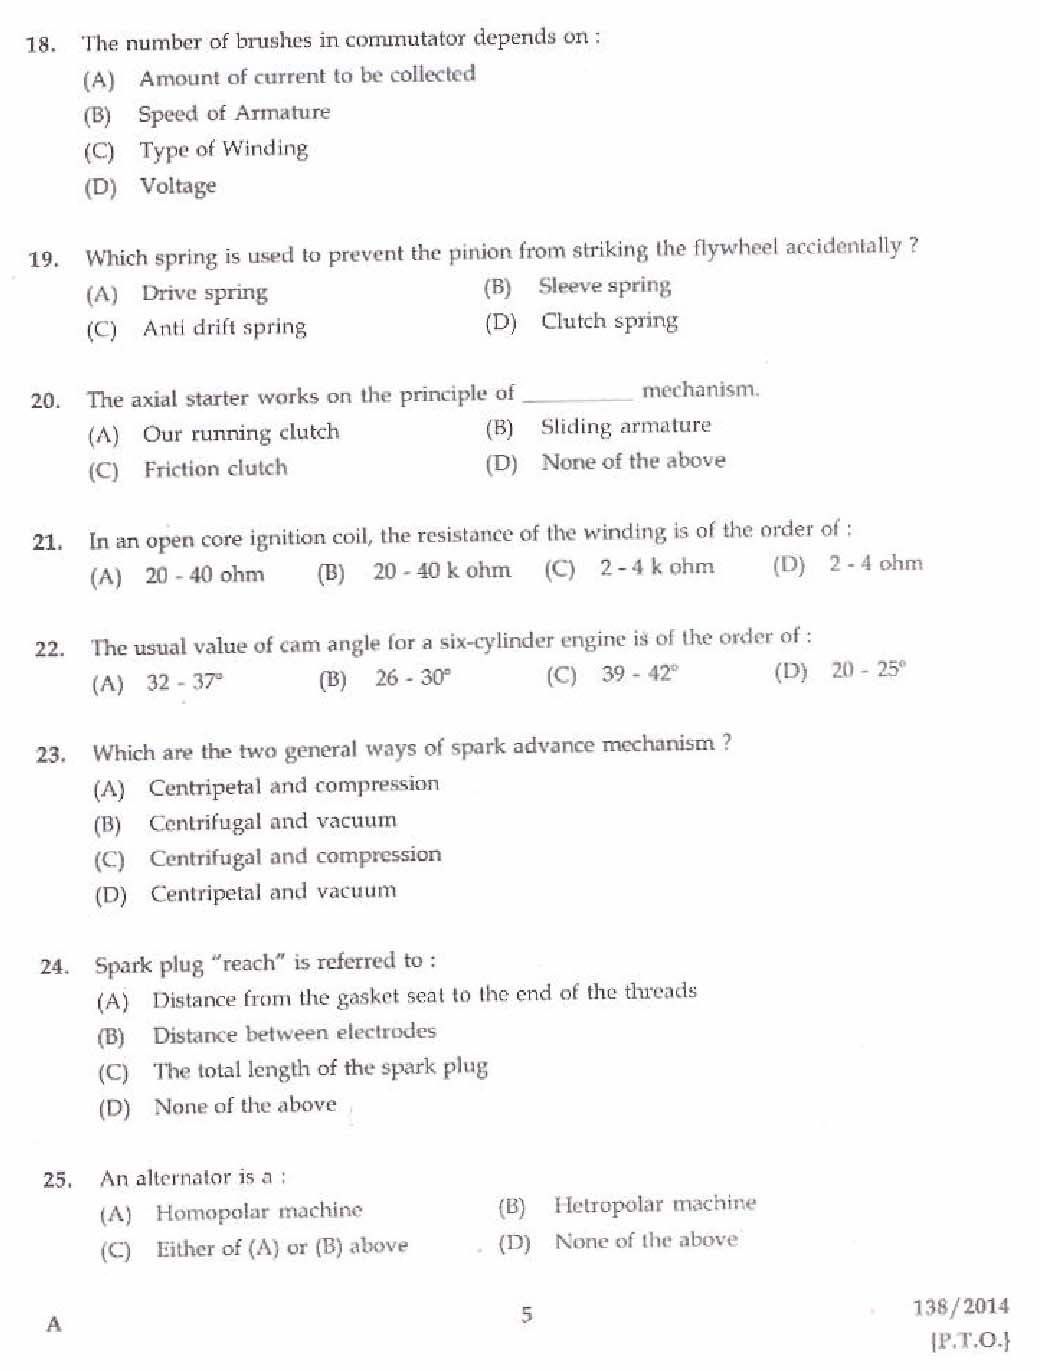 Kerala PSC Junior Instructor Exam Question Paper Code 1382014 3